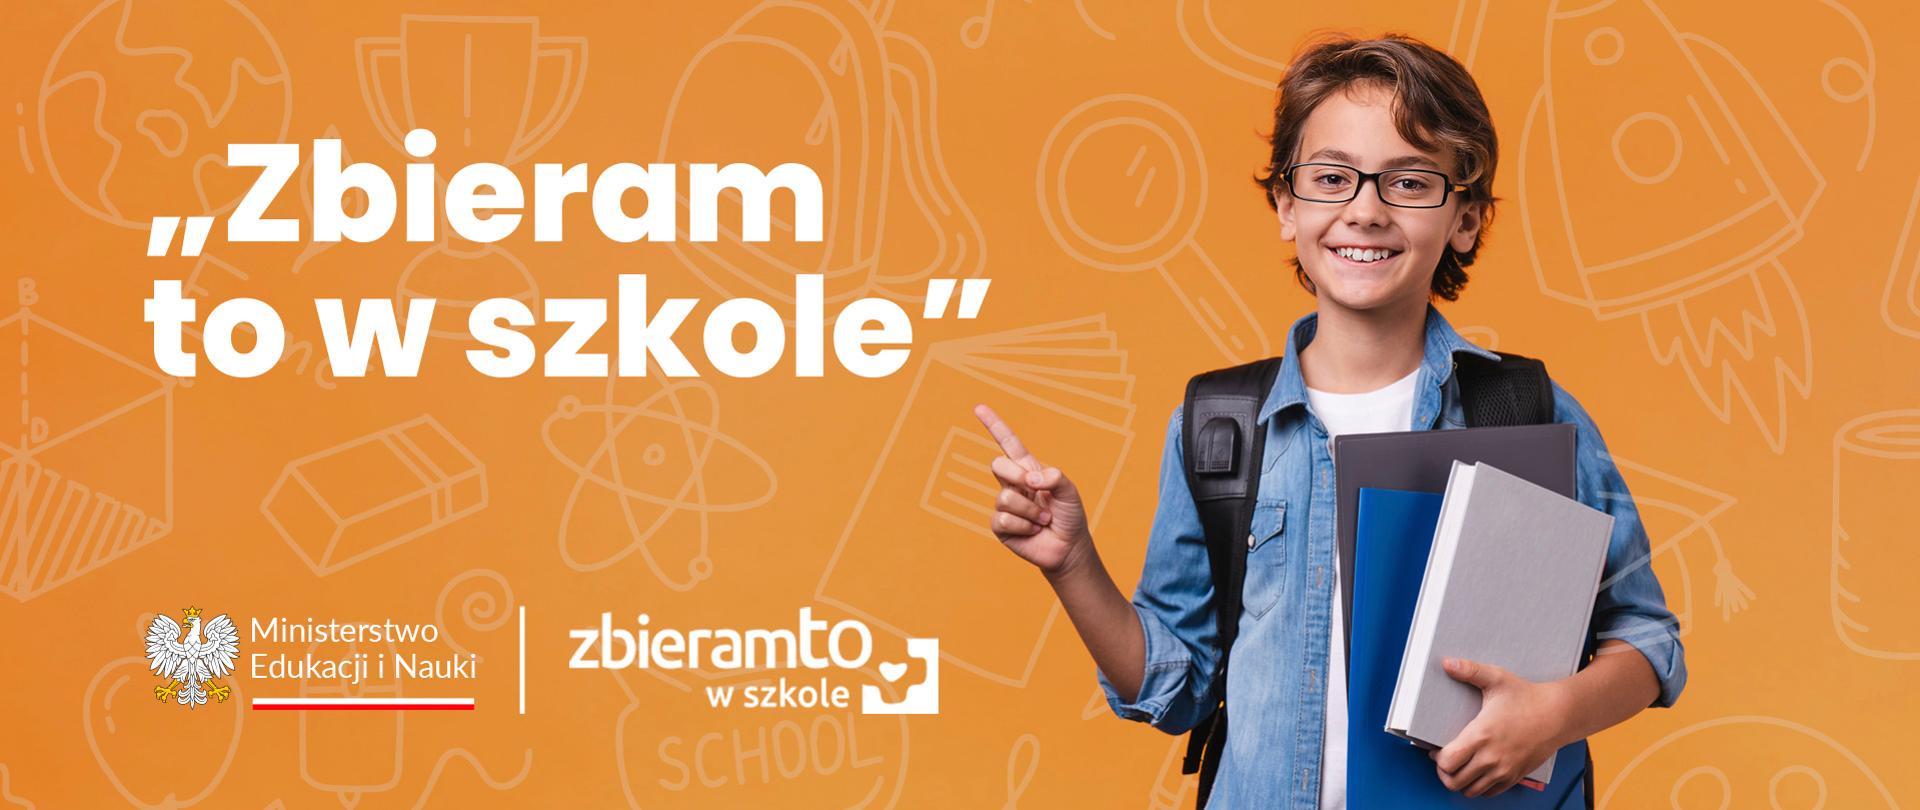 Grafika - na żółtym tle chłopiec w okularach trzymający kilka zeszytów, obok napis "Zbieram to w szkole".